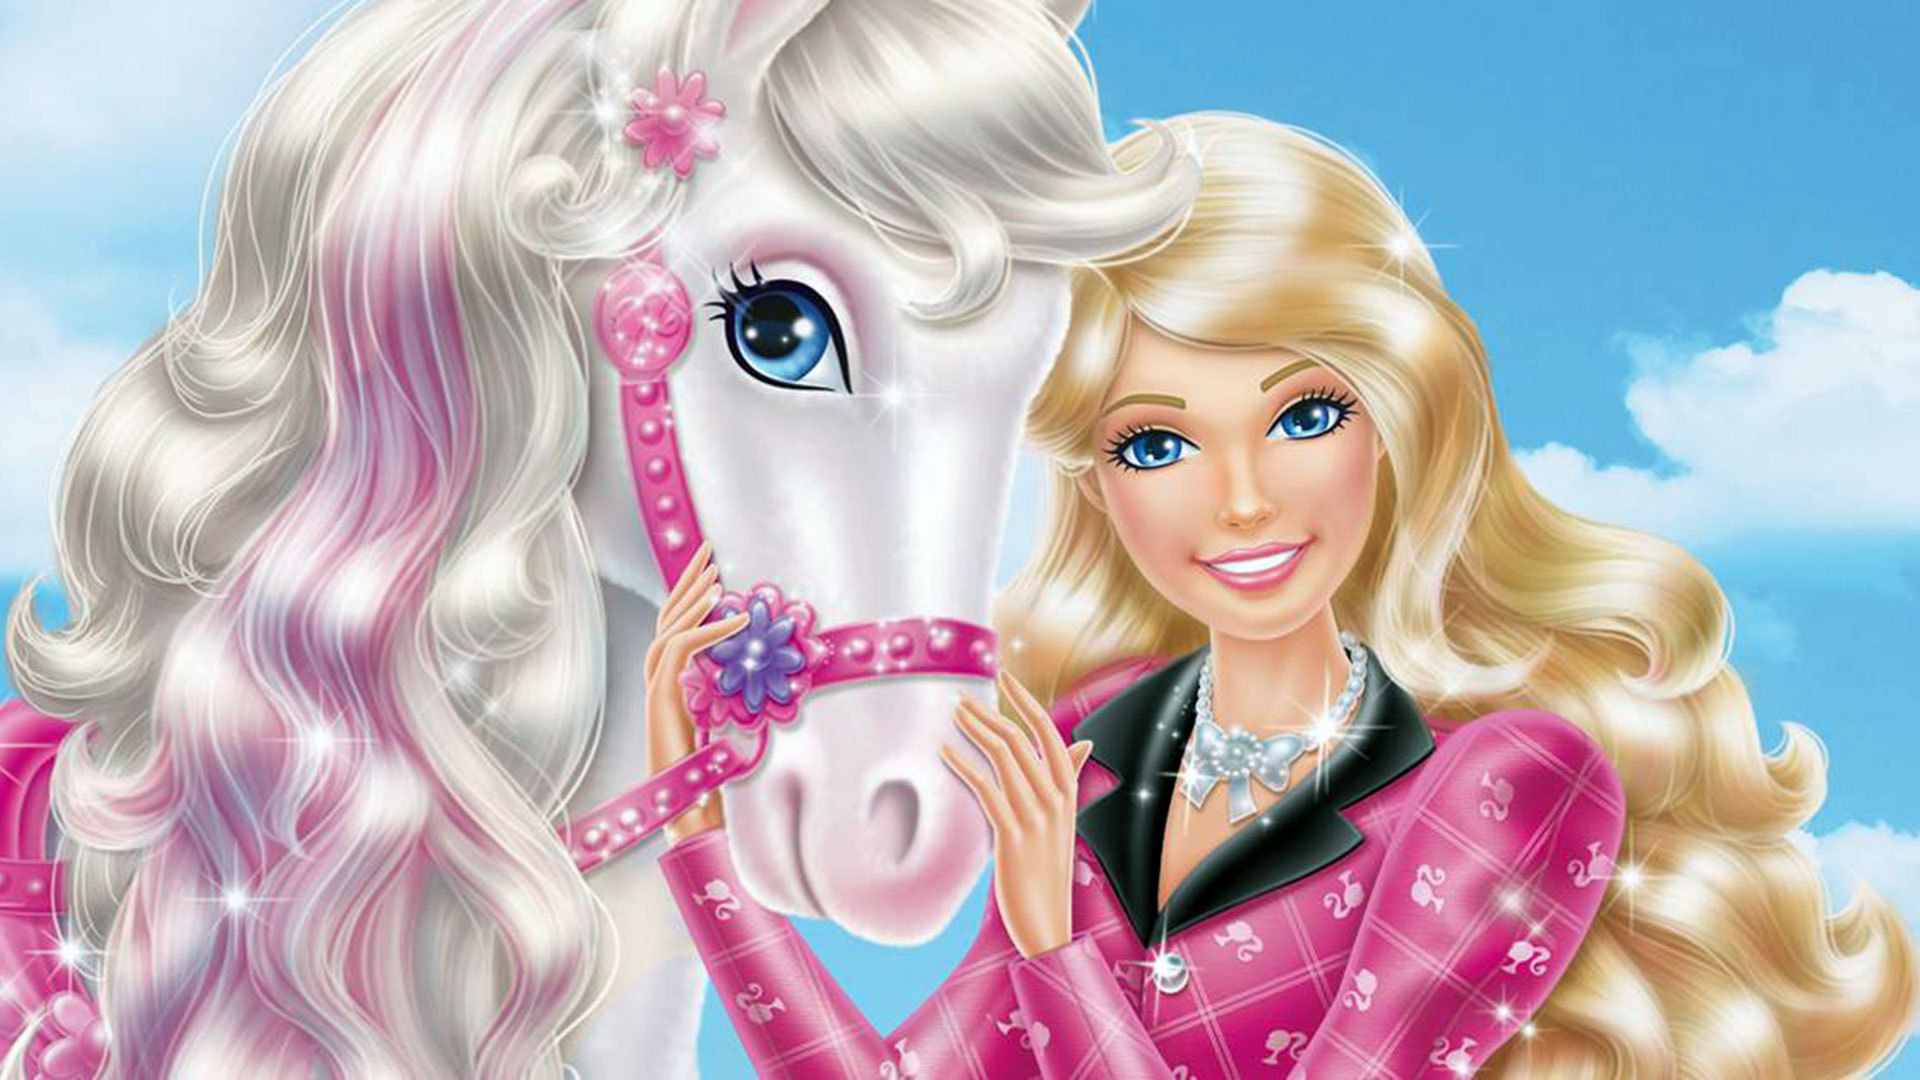 barbie wallpaper pony